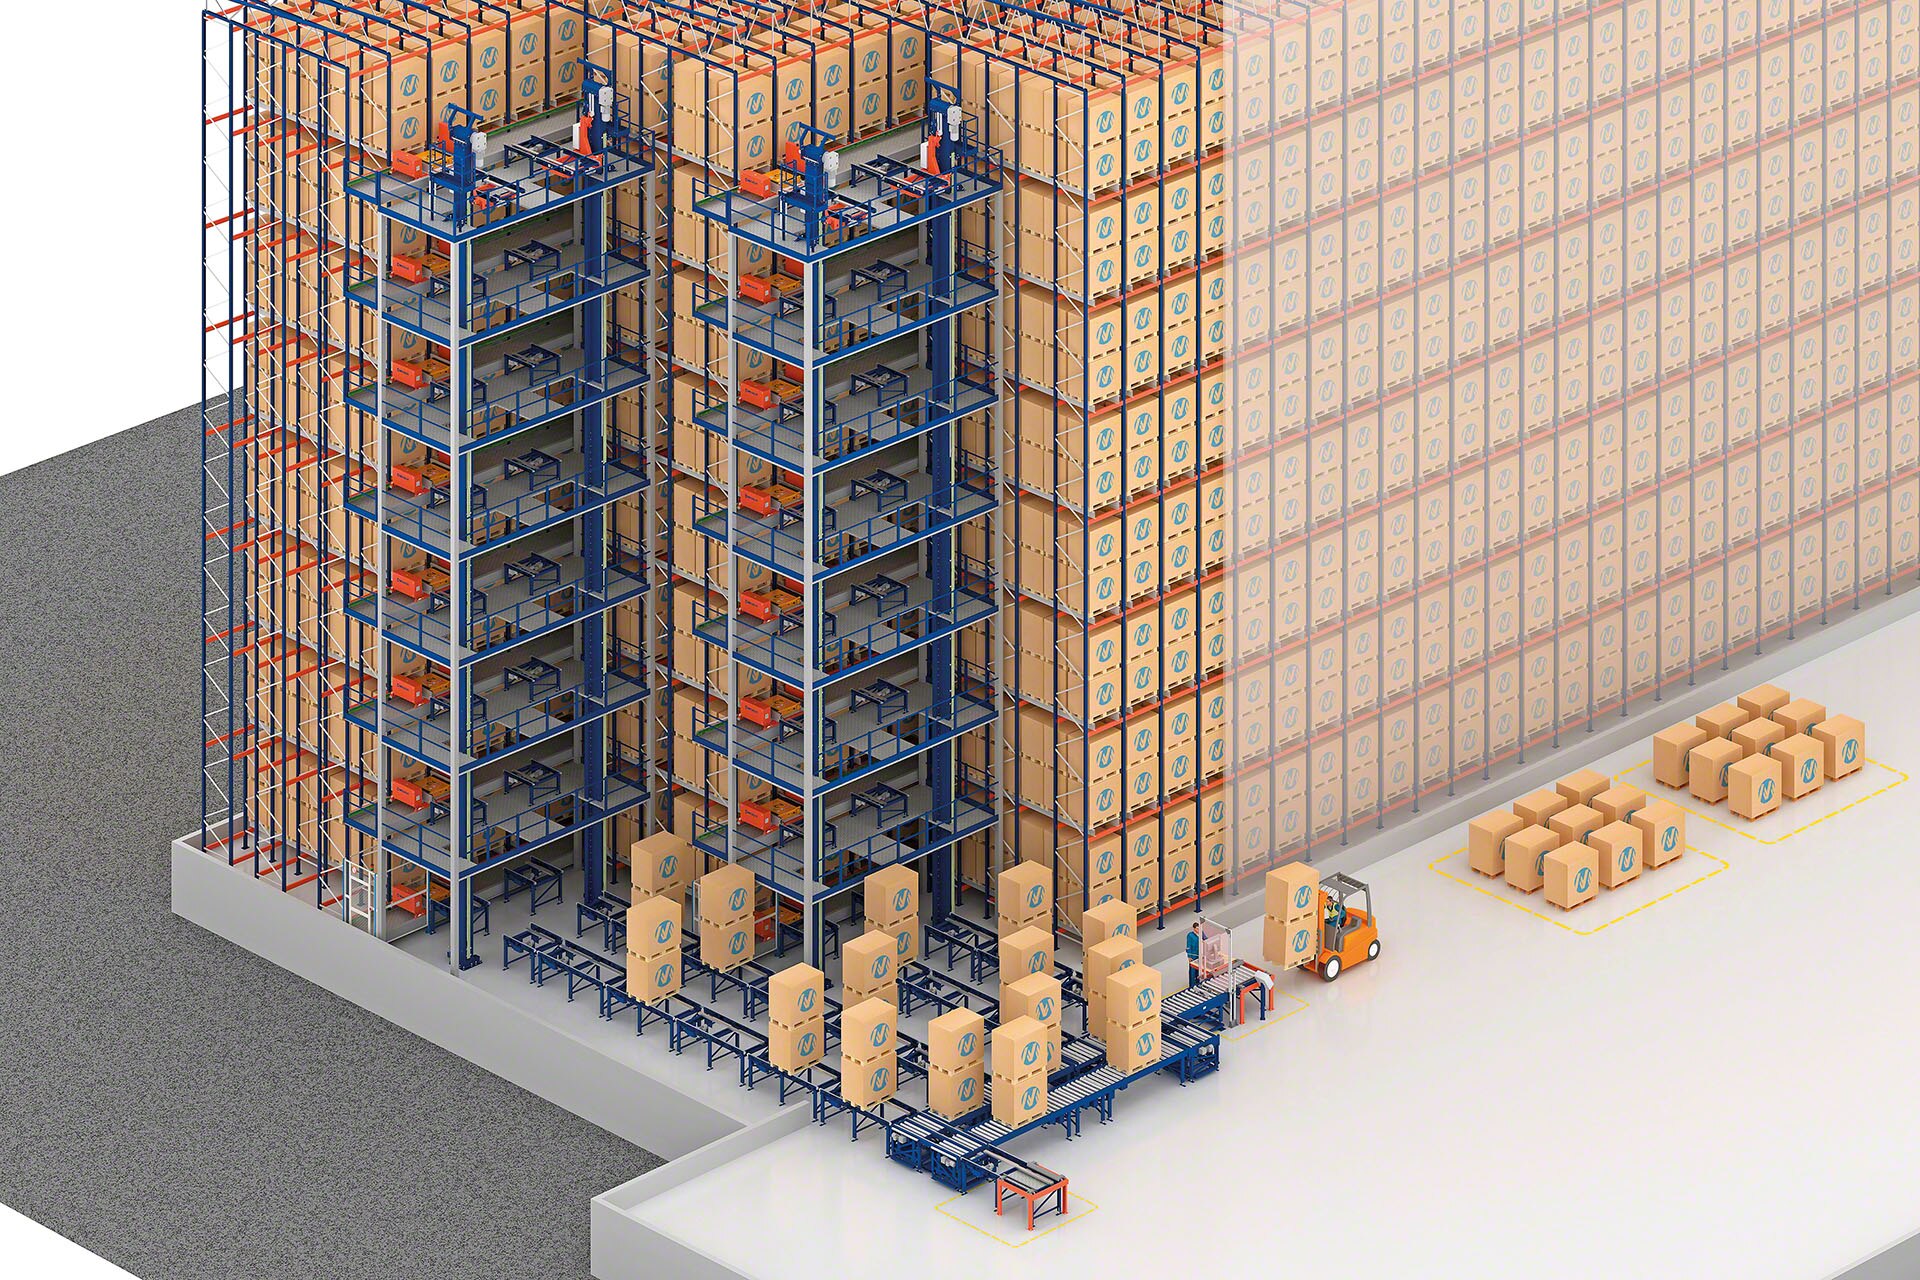 İşlemleri, bir istifleyici vince ihtiyaç olmadan otomatikleştirmek için genellikle otomatik palet asansörleri kurulur